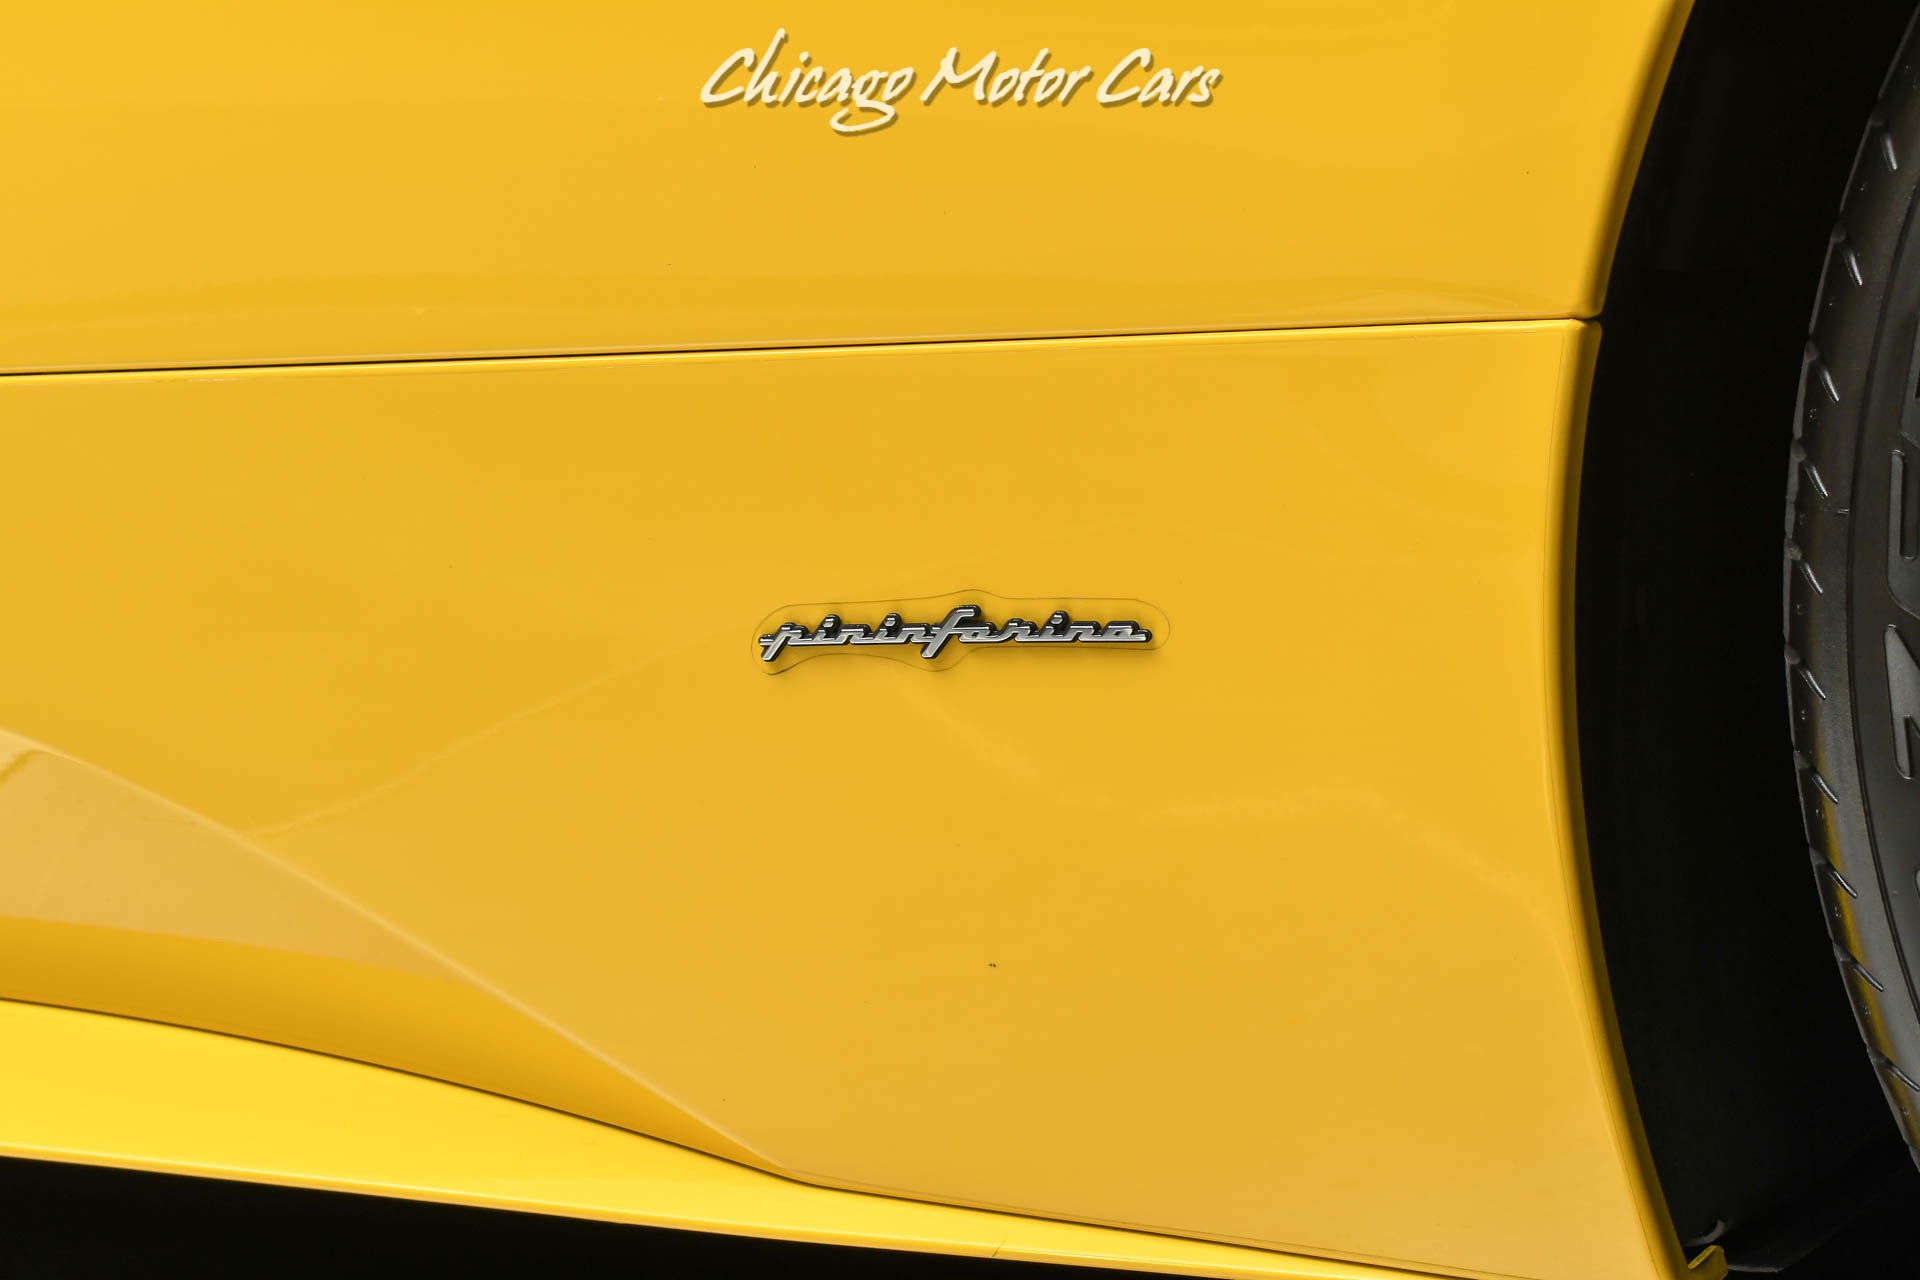 Used-2013-Ferrari-458-Italia-Coupe-CARBON-Fiber-LED-Steering-Wheel-LOADED-Serviced